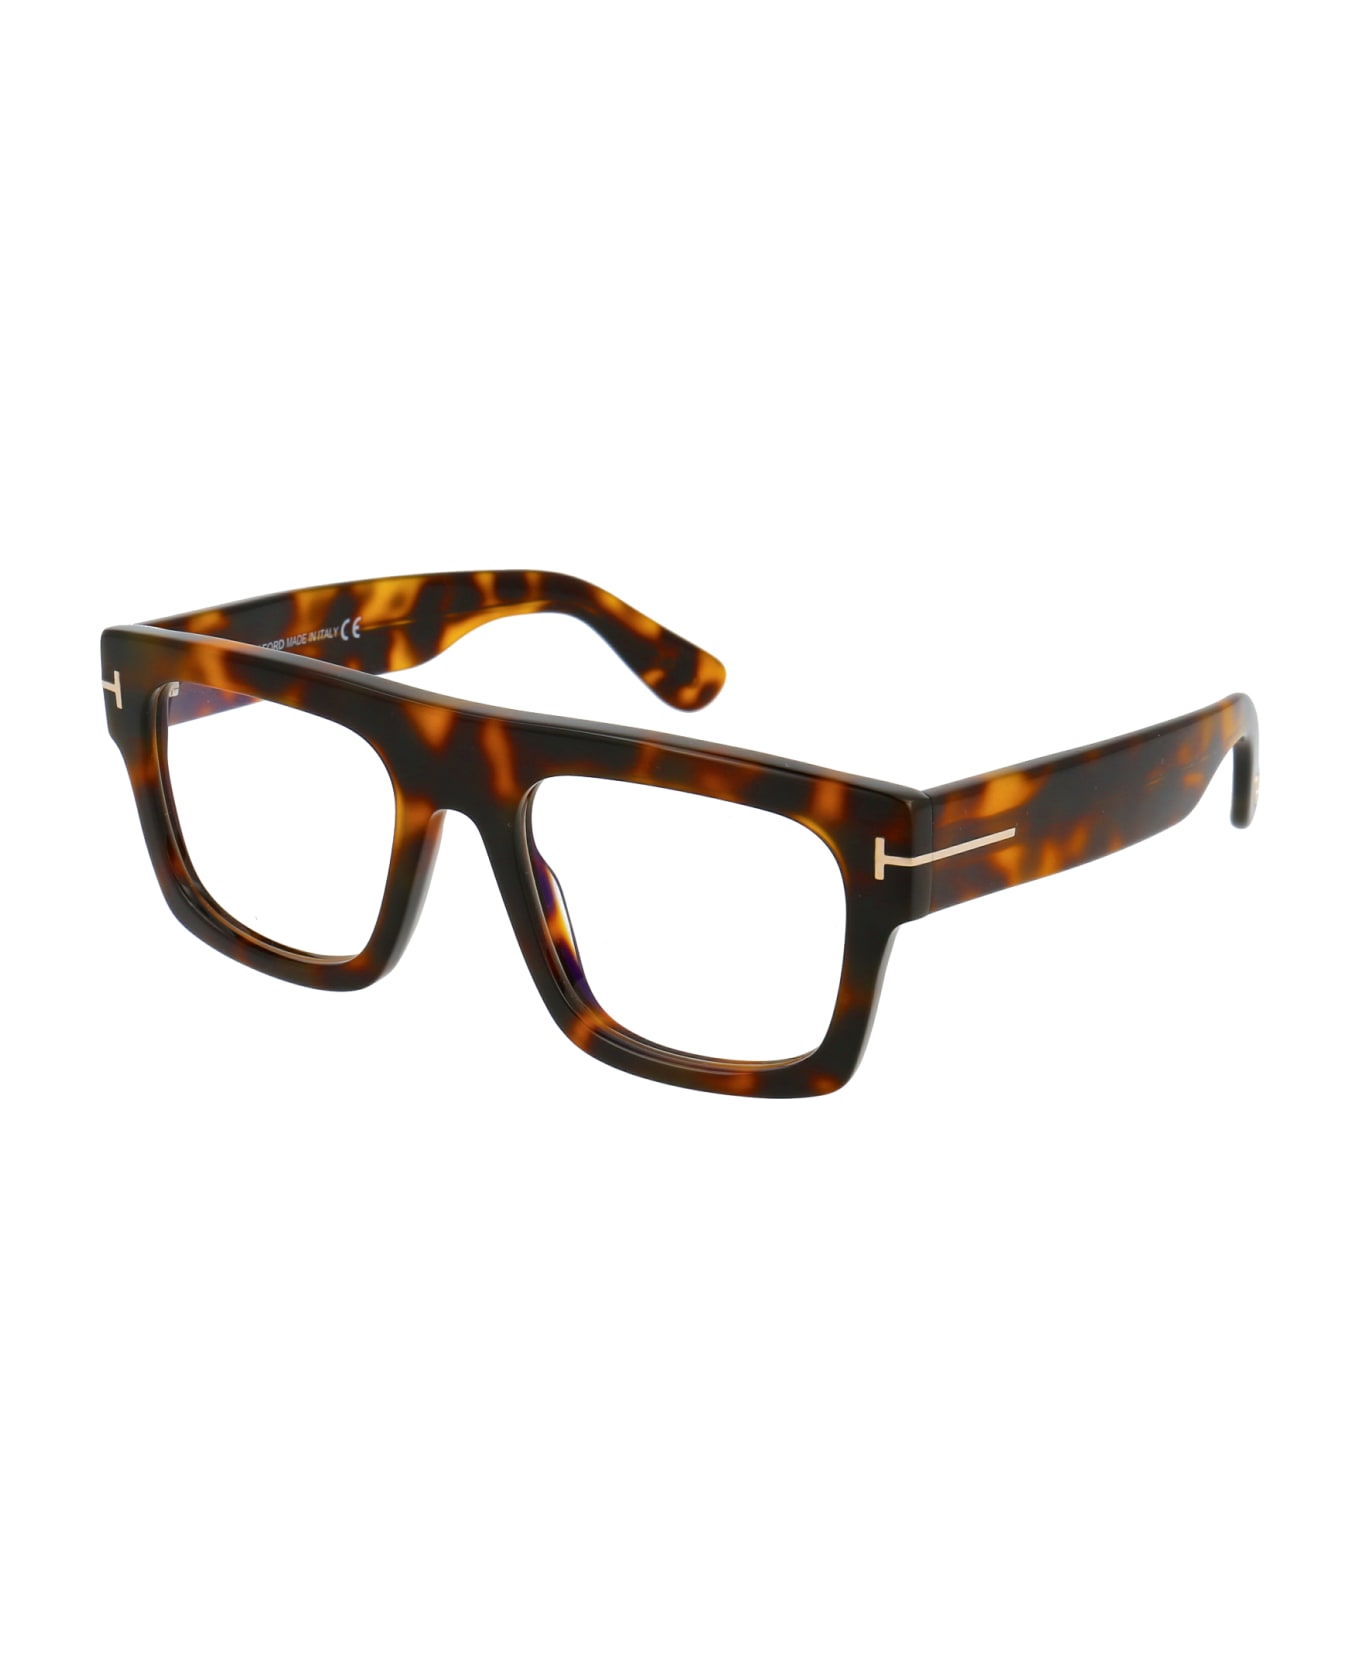 Tom Ford Eyewear Ft5634-b Glasses - 056 Avana/Altro